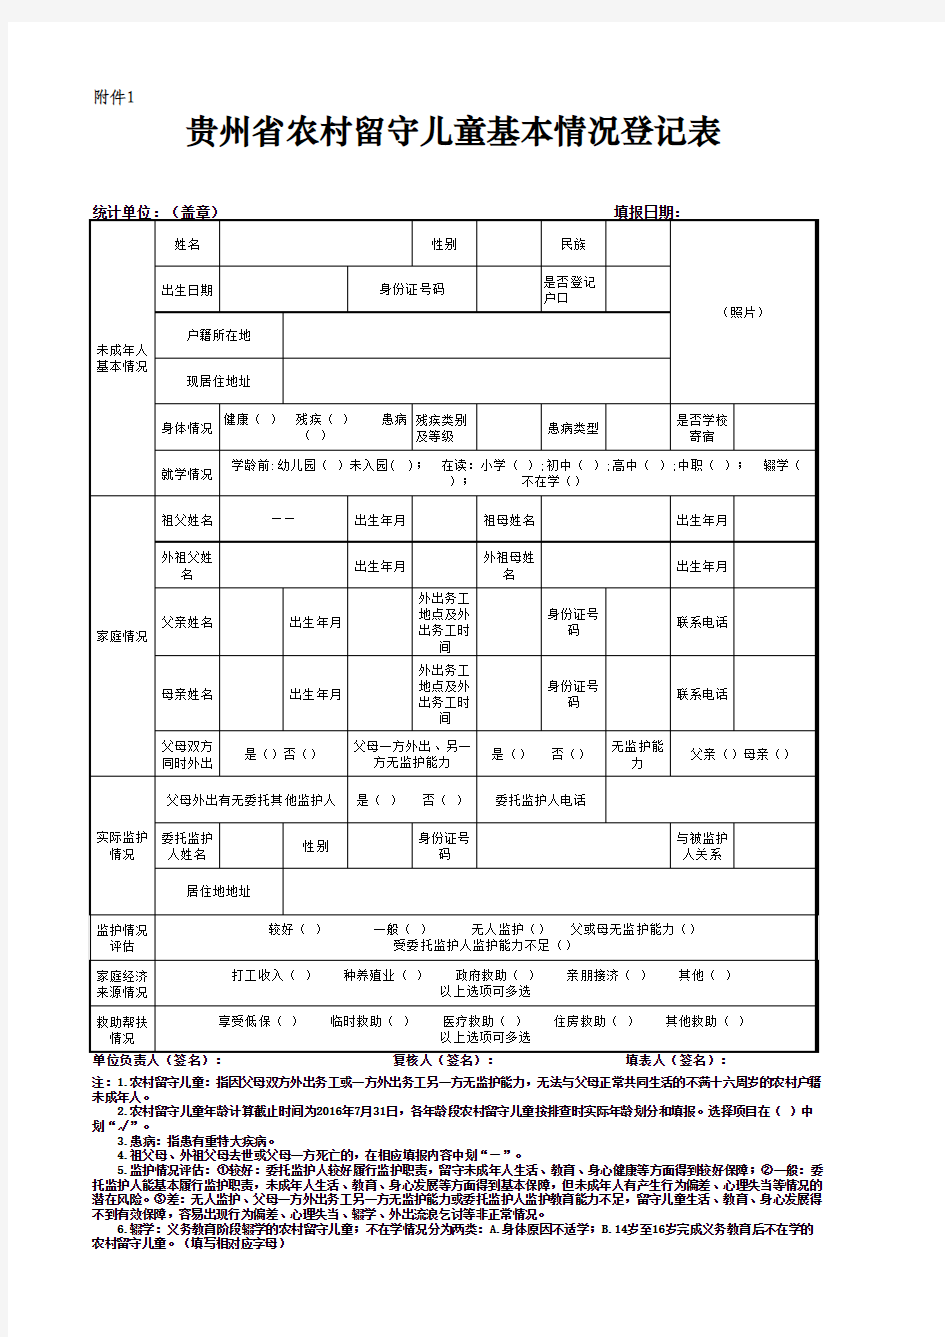 贵州省农村留守儿童基本情况登记表1